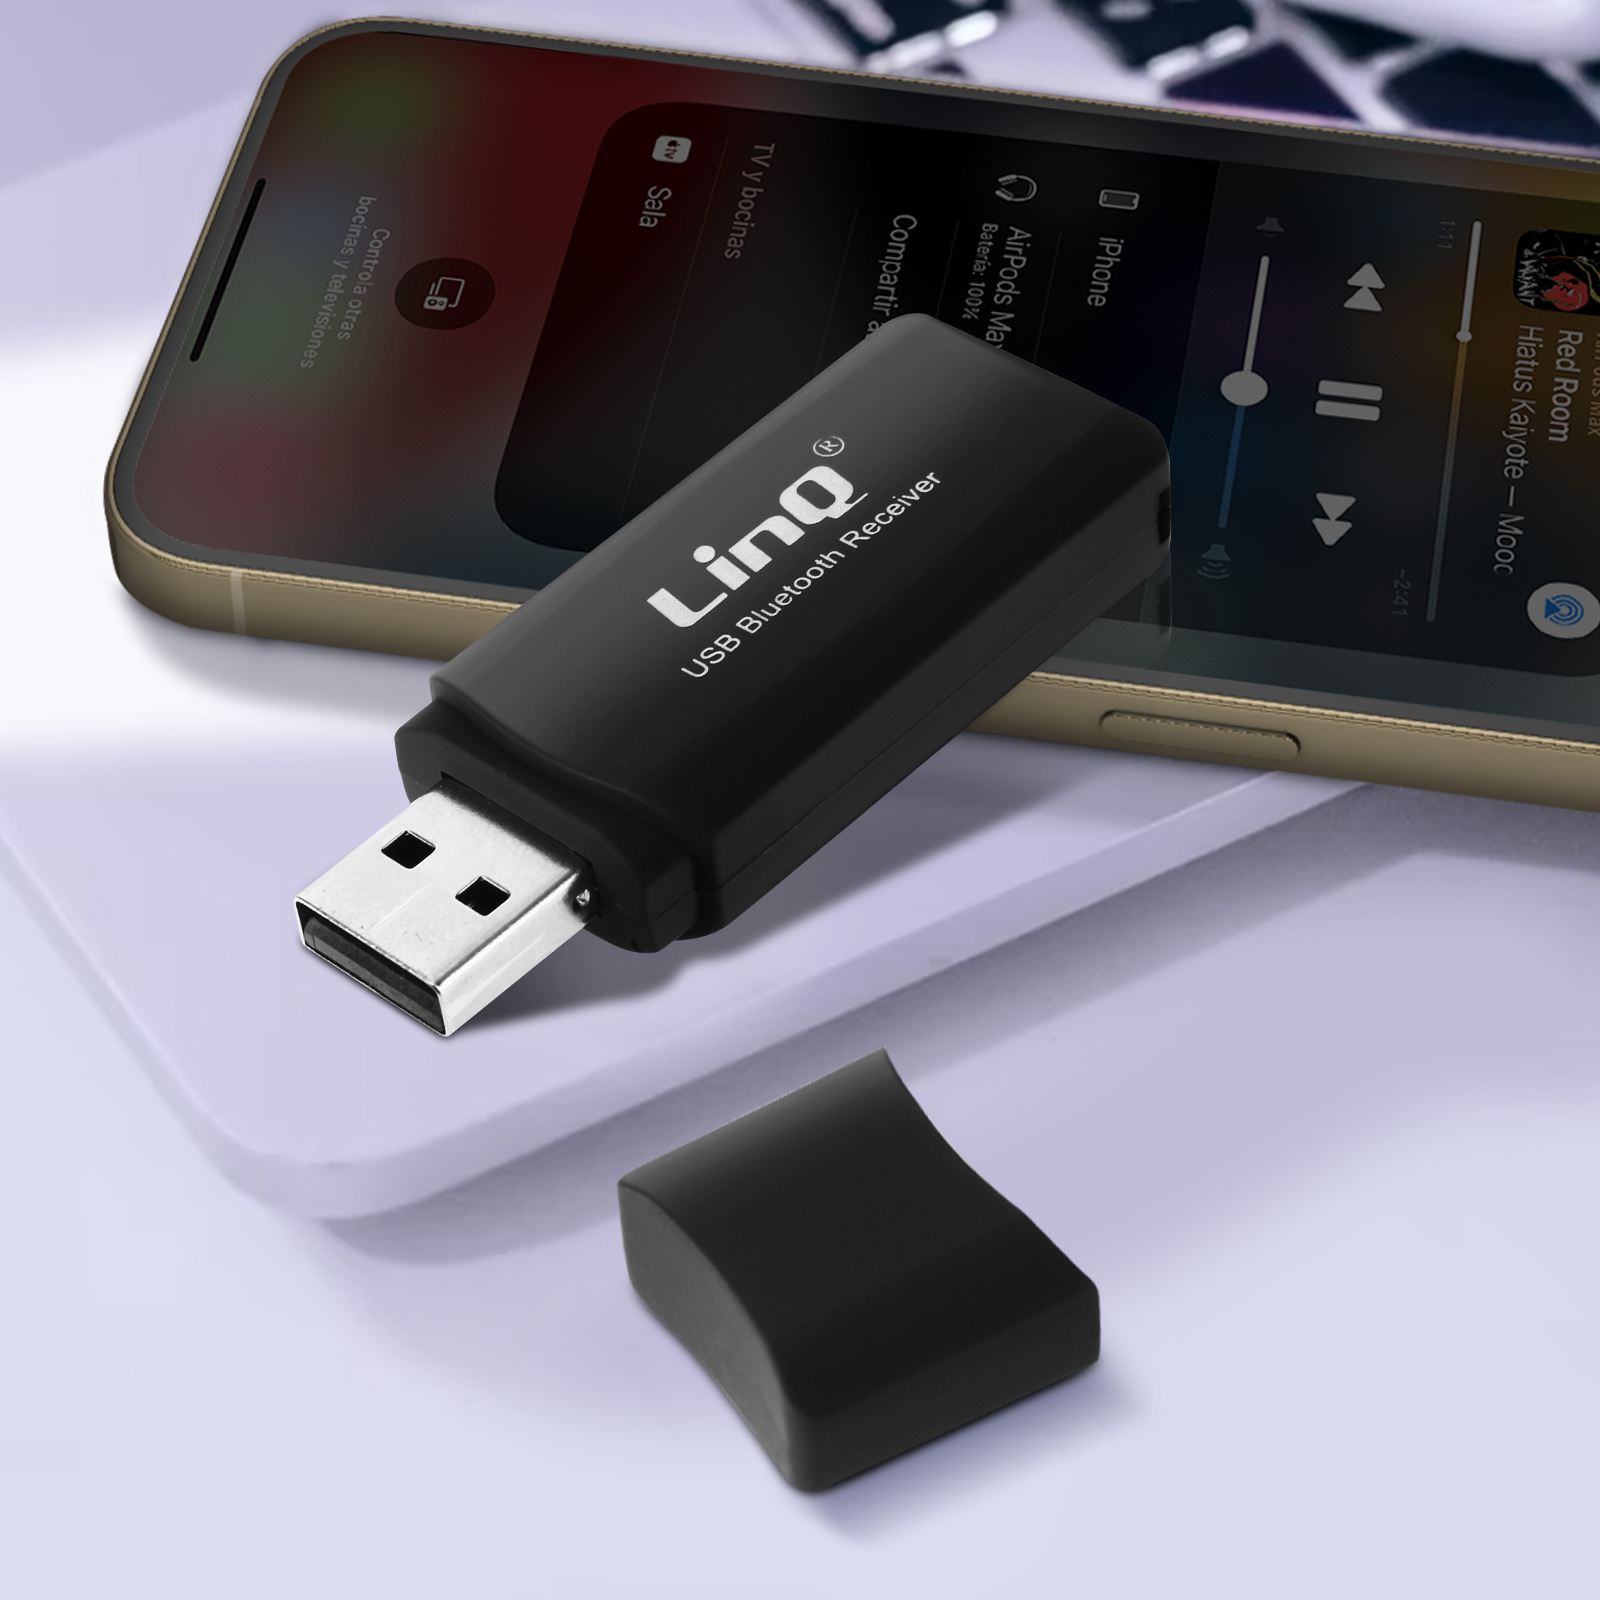 USB Adaptateur Bluetooth clé Bluetooth pour pc transmetteur